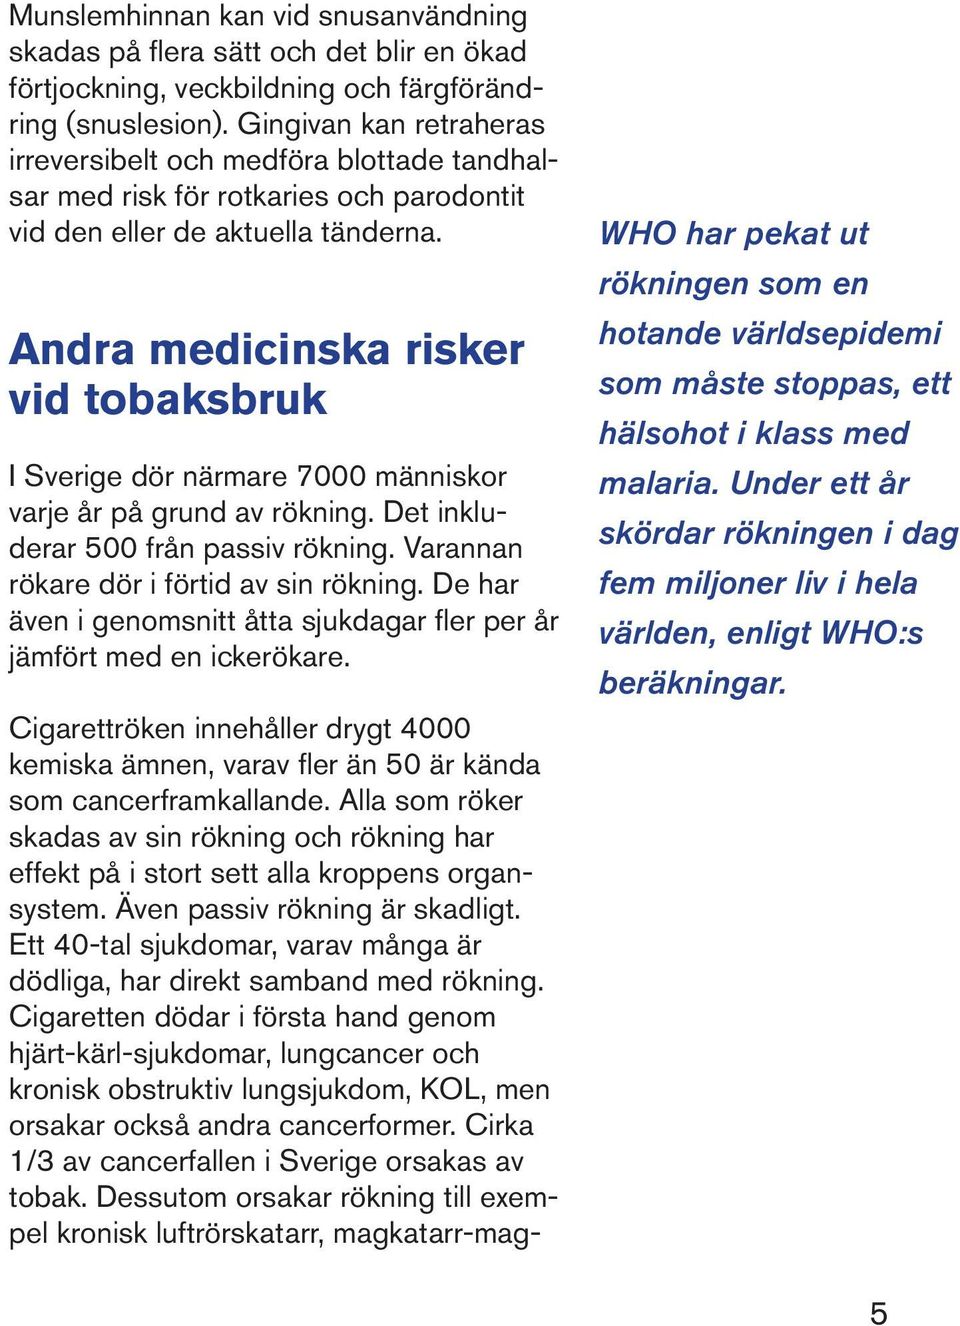 Andra medicinska risker vid tobaksbruk I Sverige dör närmare 7000 människor varje år på grund av rökning. Det inkluderar 500 från passiv rökning. Varannan rökare dör i förtid av sin rökning.